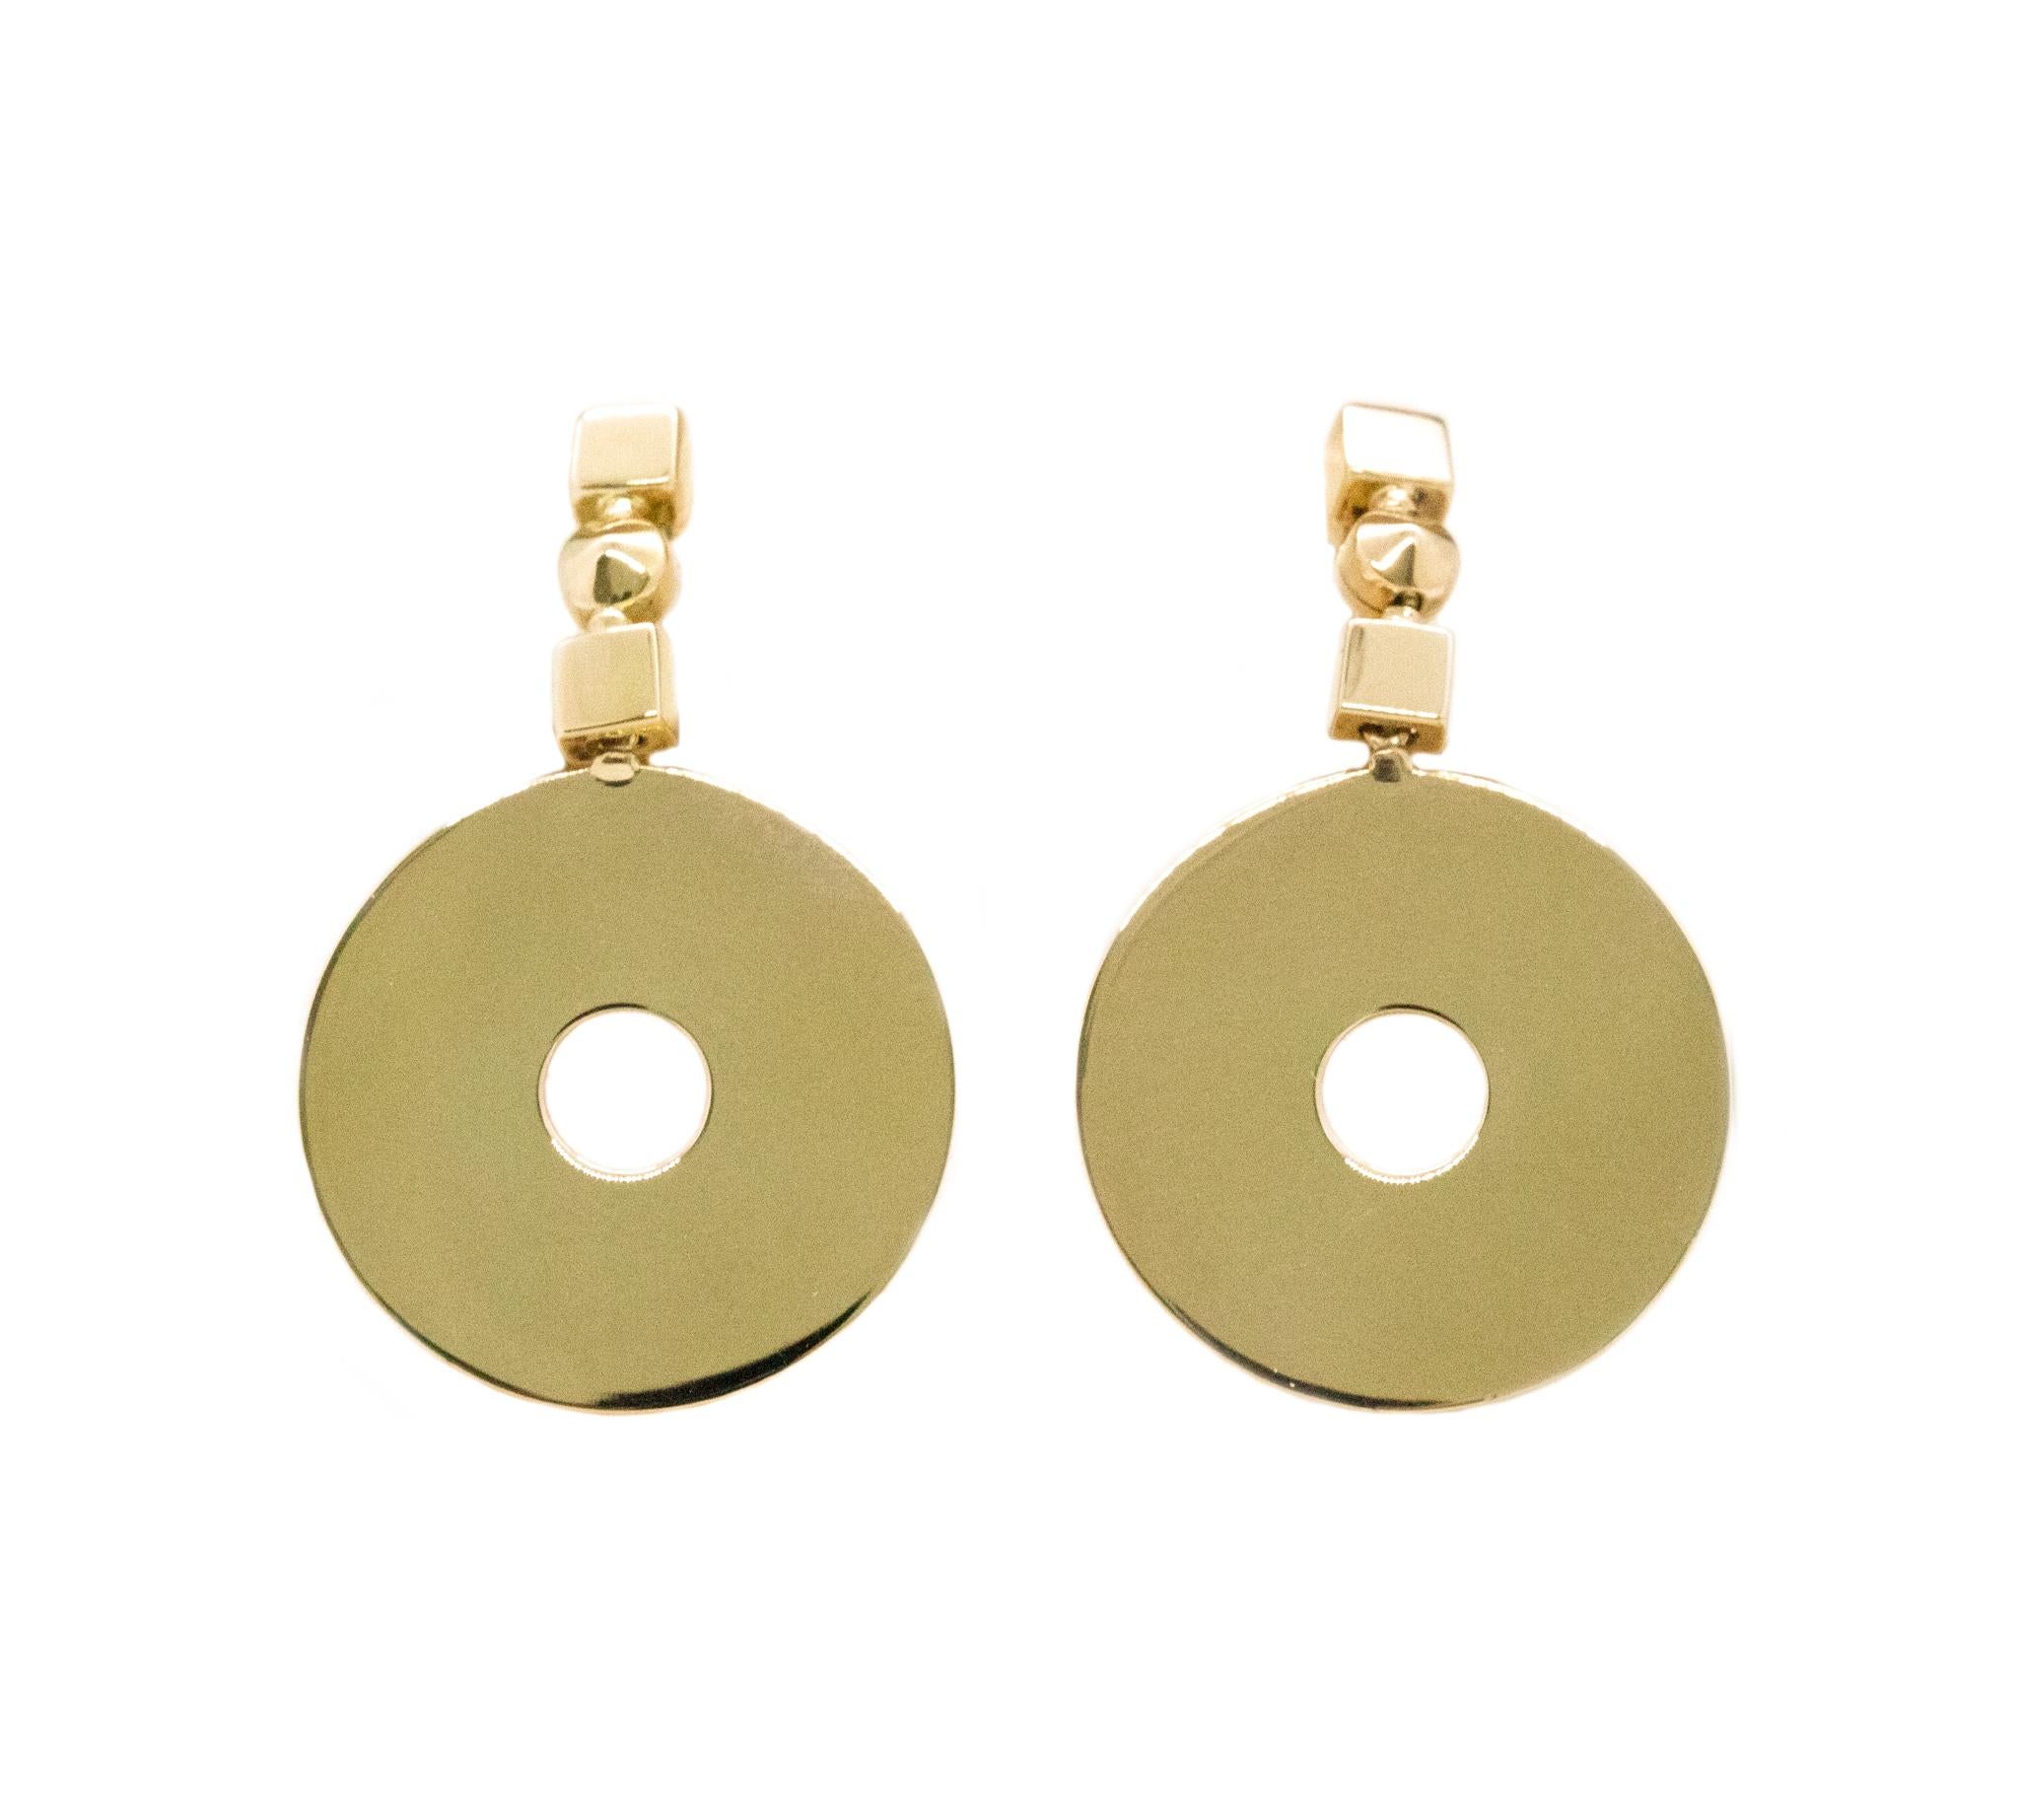 Geometrische Lucea-Ohrringe, entworfen von Bvlgari.

Geometrisches Vintage-Paar, hergestellt in Italien von Bvlgari, ca. 1970er Jahre. Diese Lucea Ohrringe wurden in massivem 18 Karat hochglanzpoliertem Gelbgold gefertigt und eignen sich mit